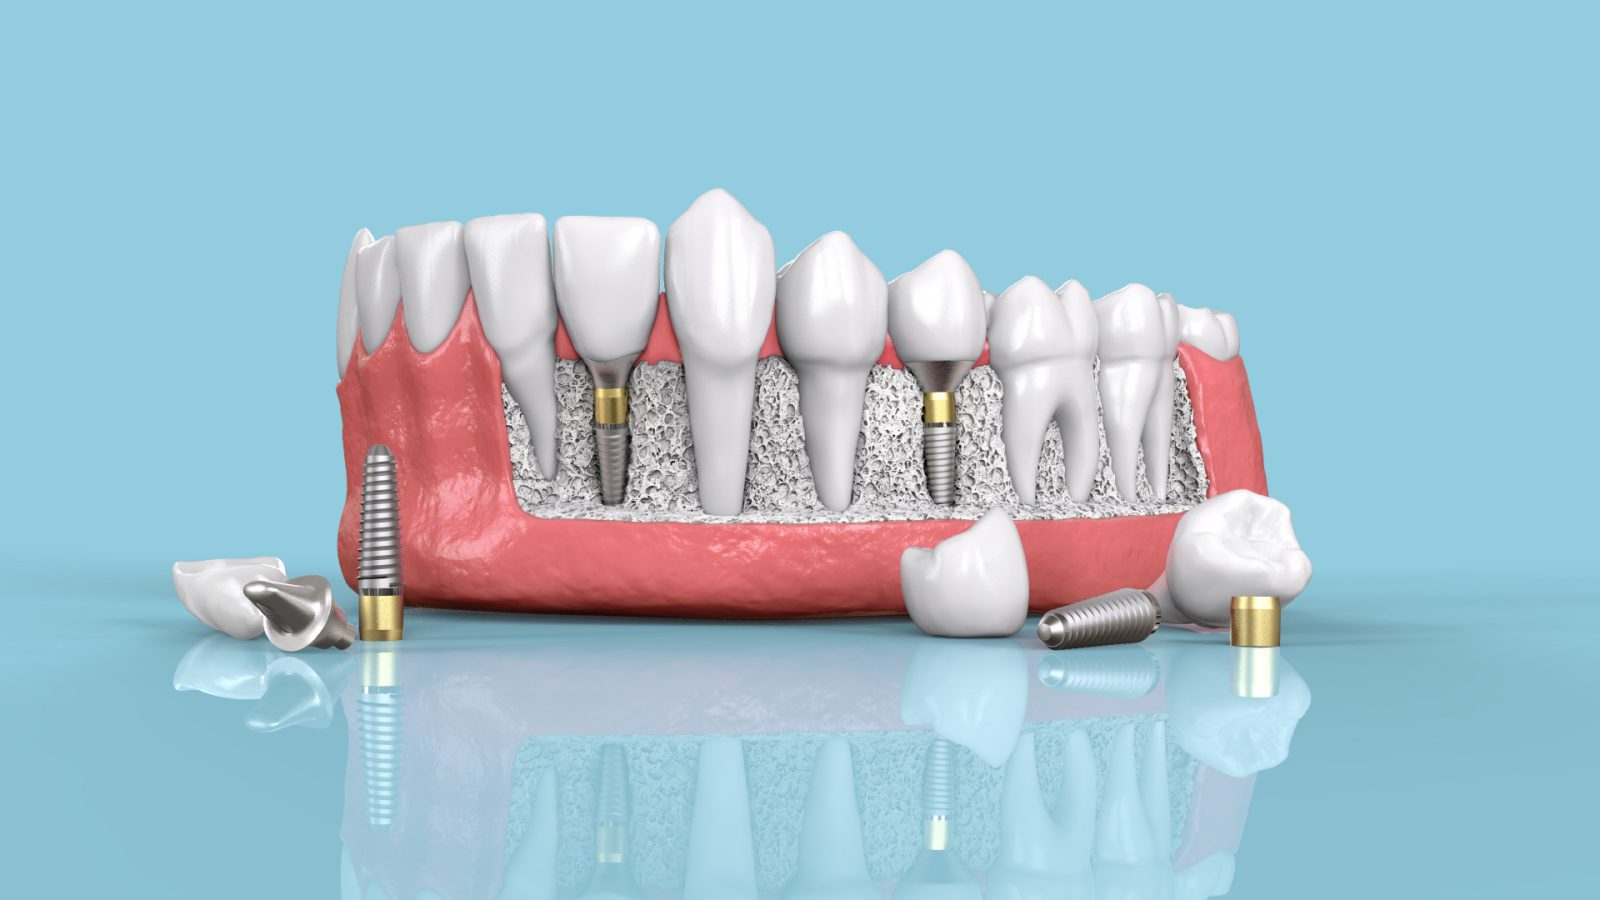 عوامل مؤثر در خرابی ایملپنت دندان پوسیده